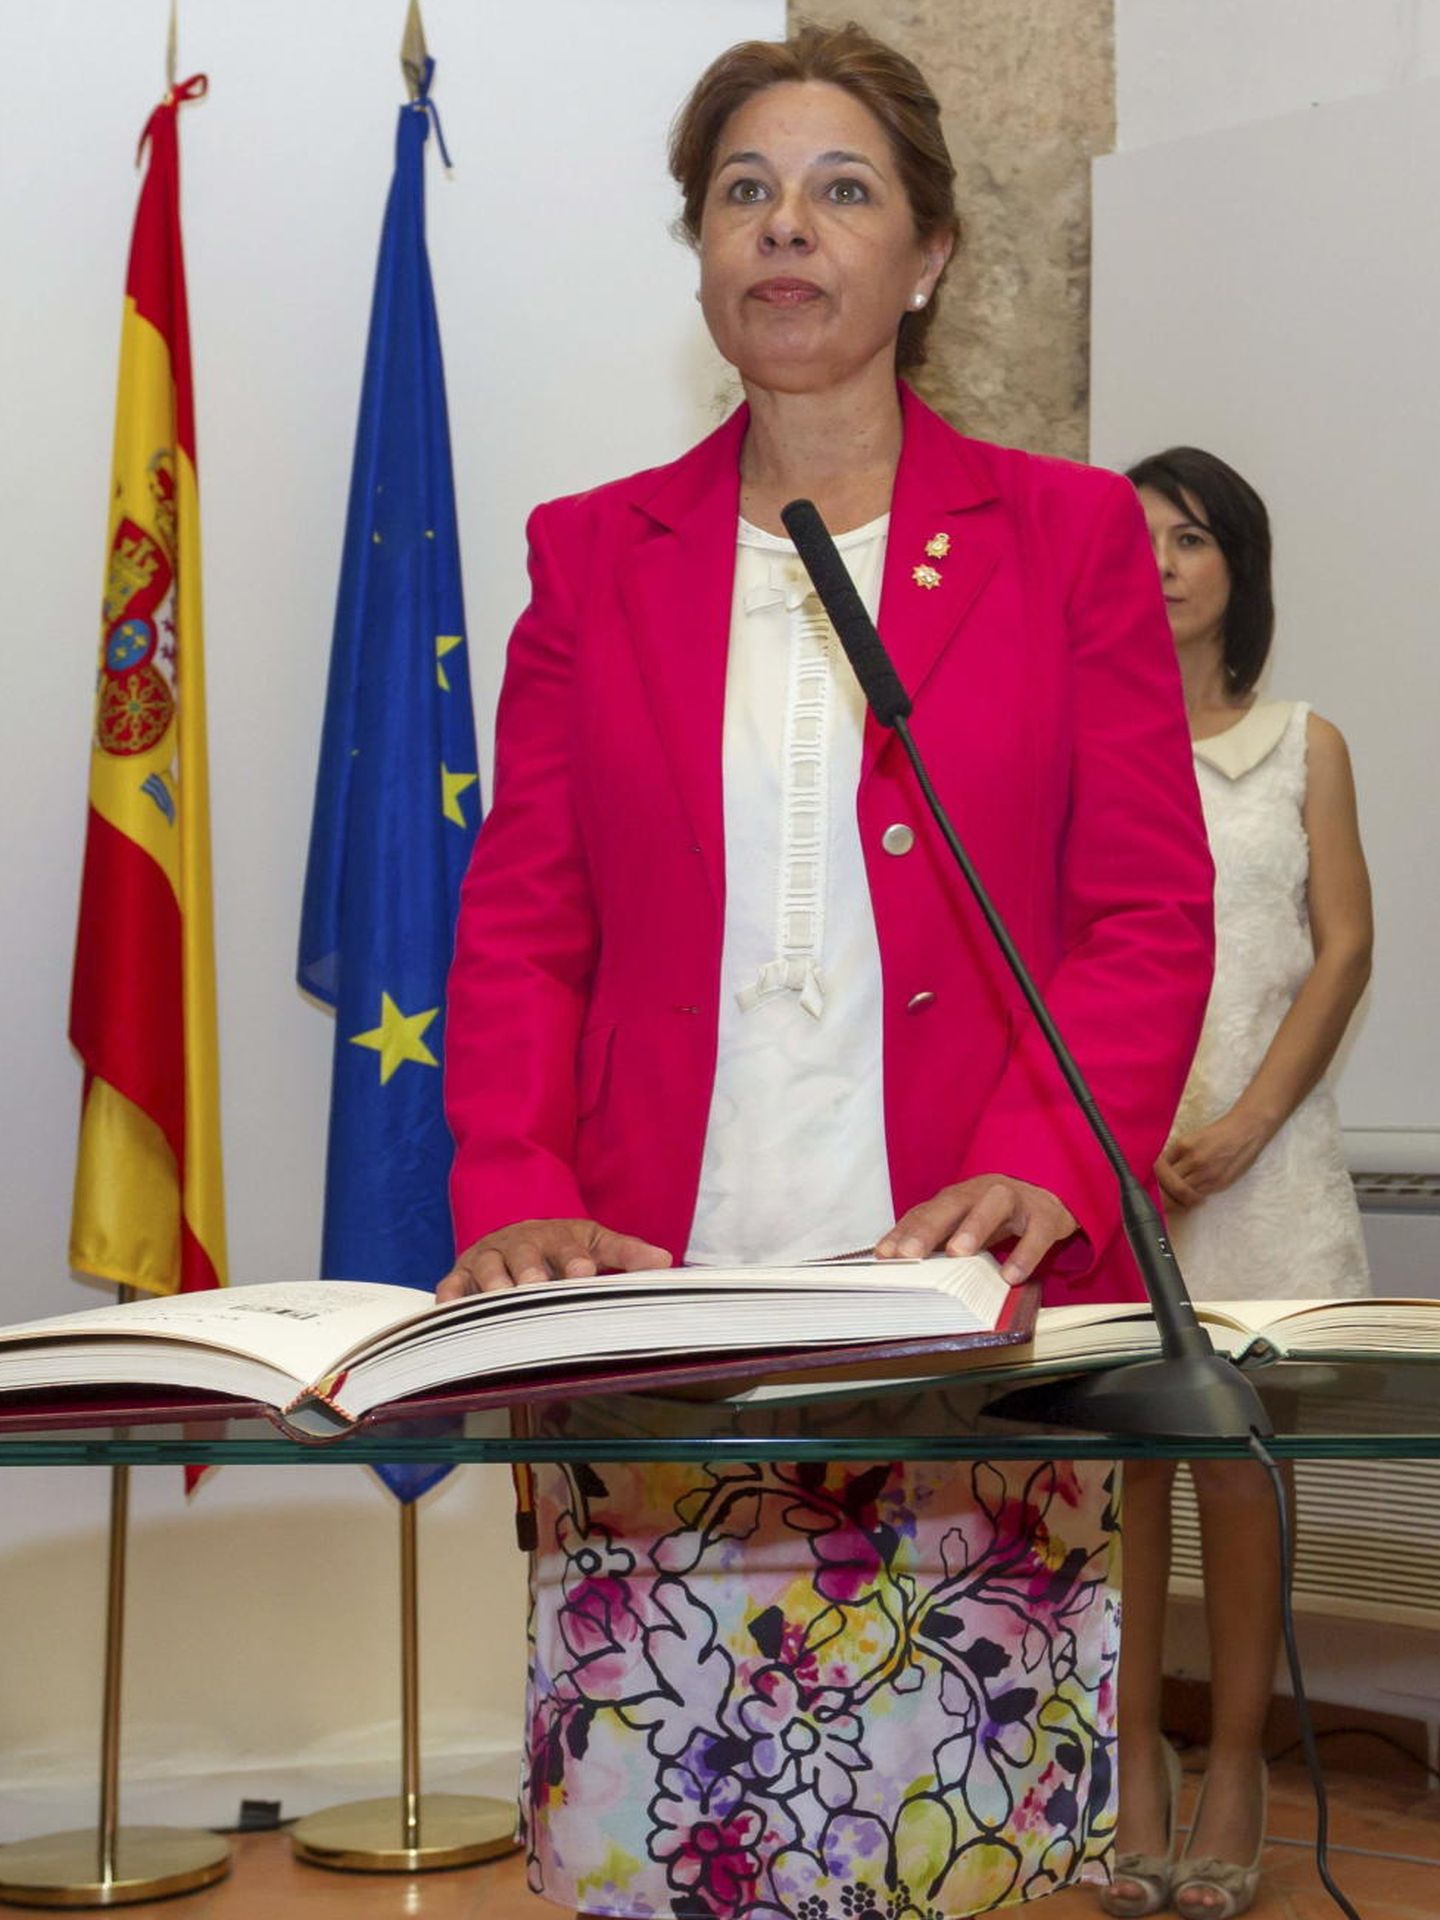 La consejera de Administración Pública y Hacienda de la Junta de Extremadura, Pilar Blanco Morales. (EFE)